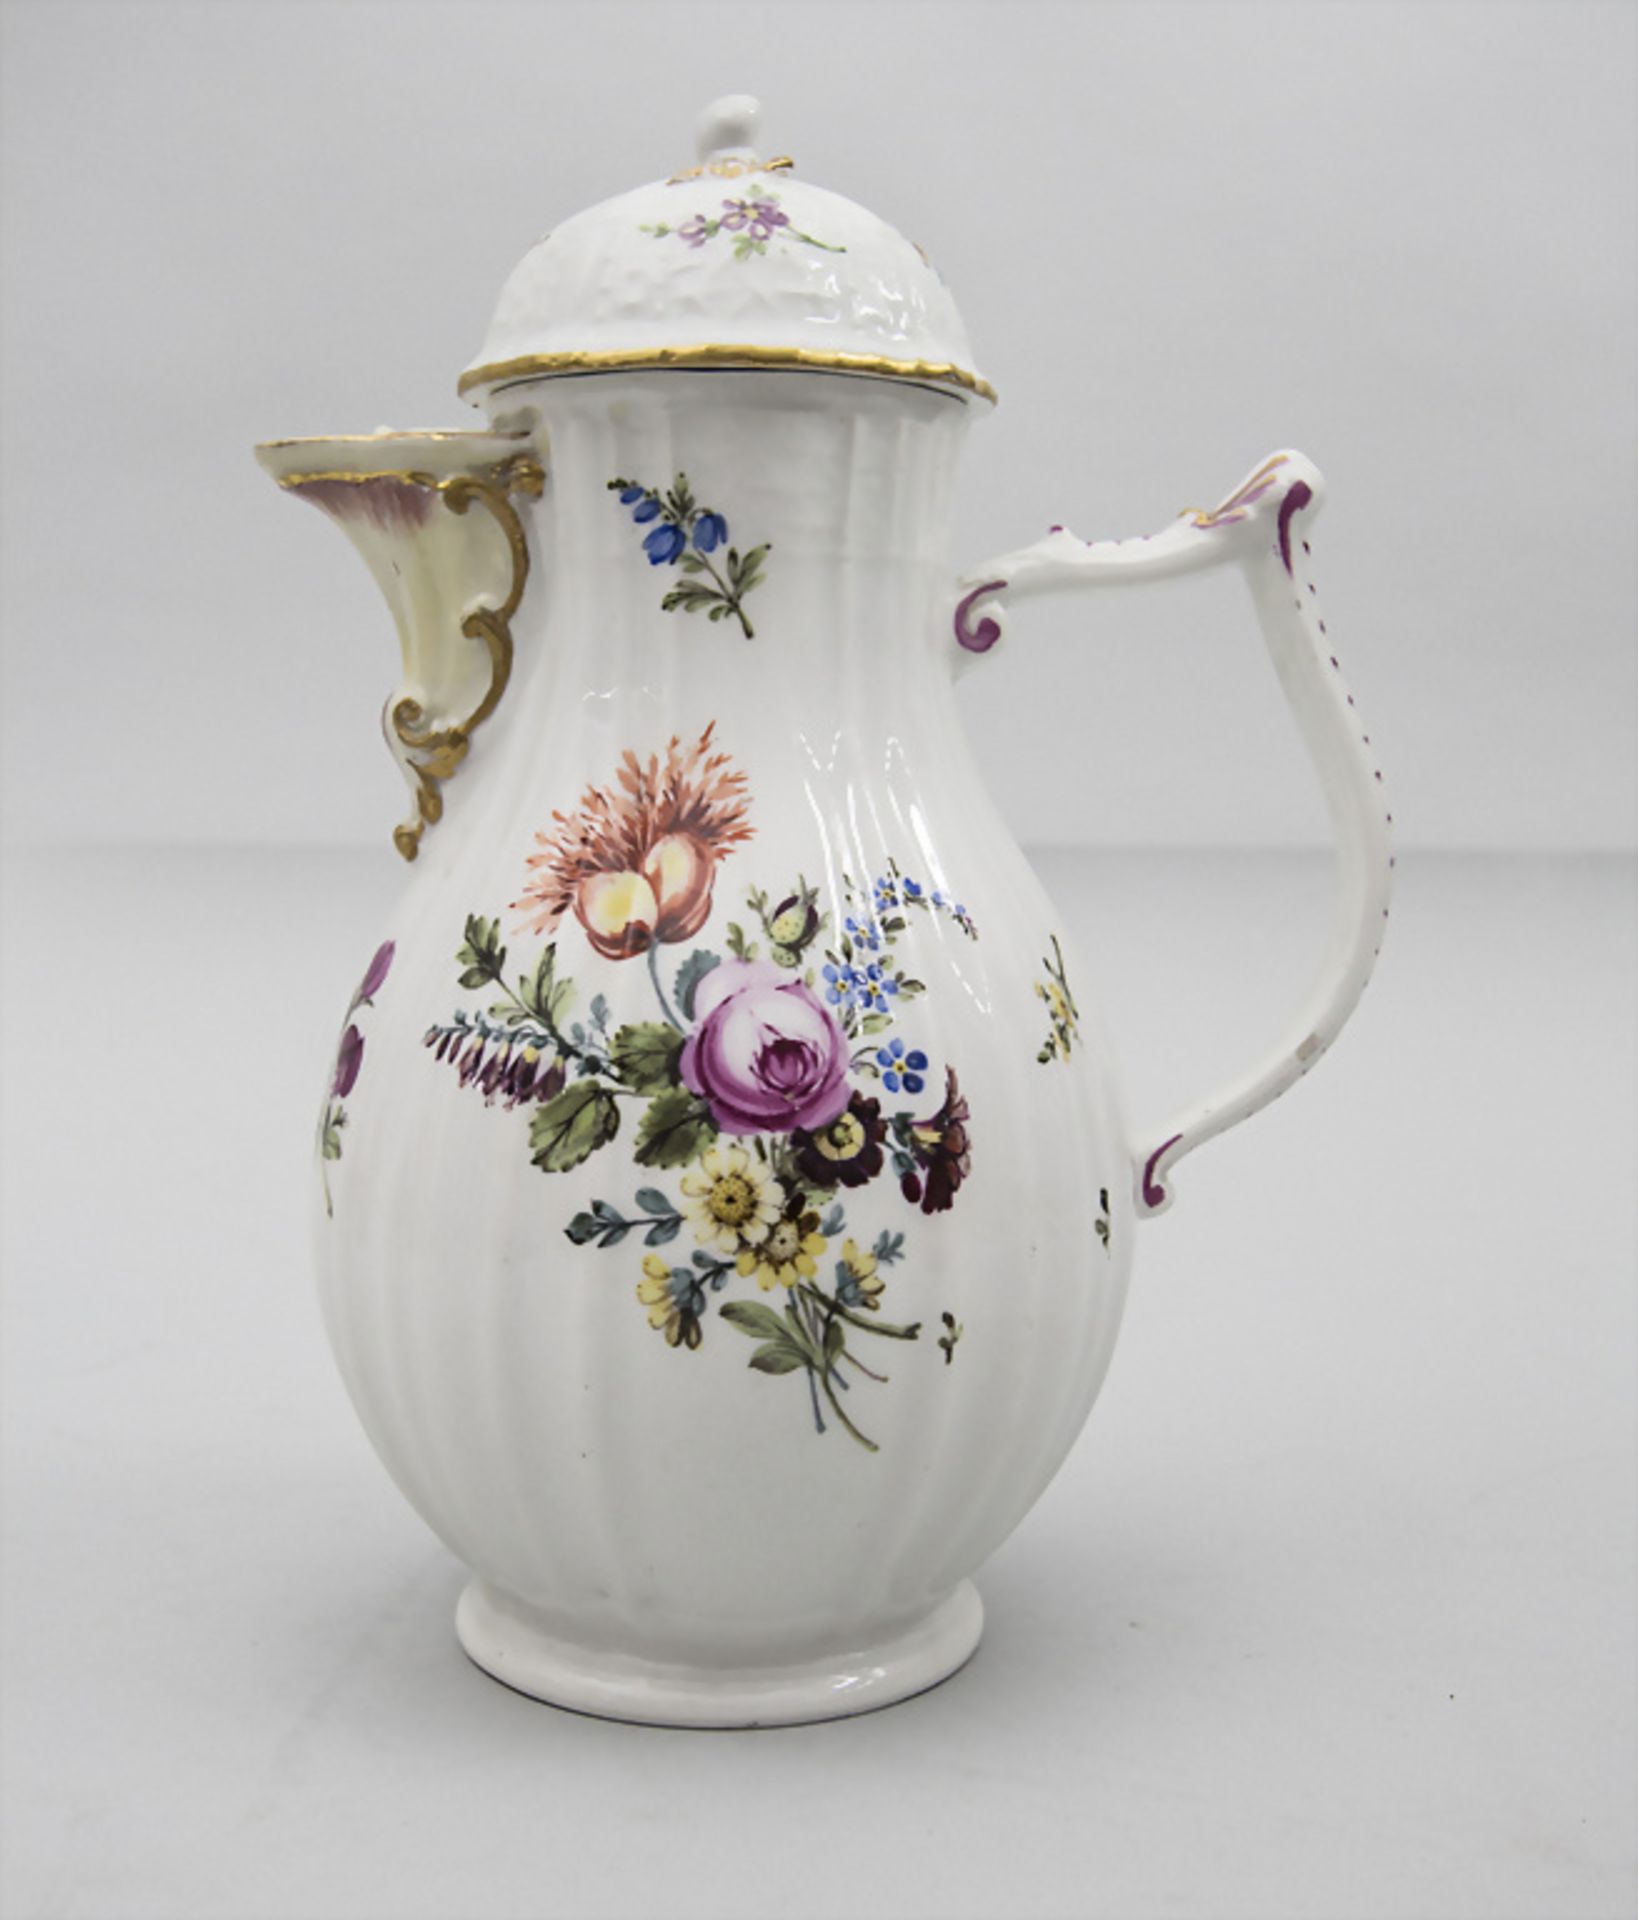 Kaffeekanne mit Blumenbouquets / A coffee pot with flower bouquets, Meissen, Punktzeit (1763-1774)